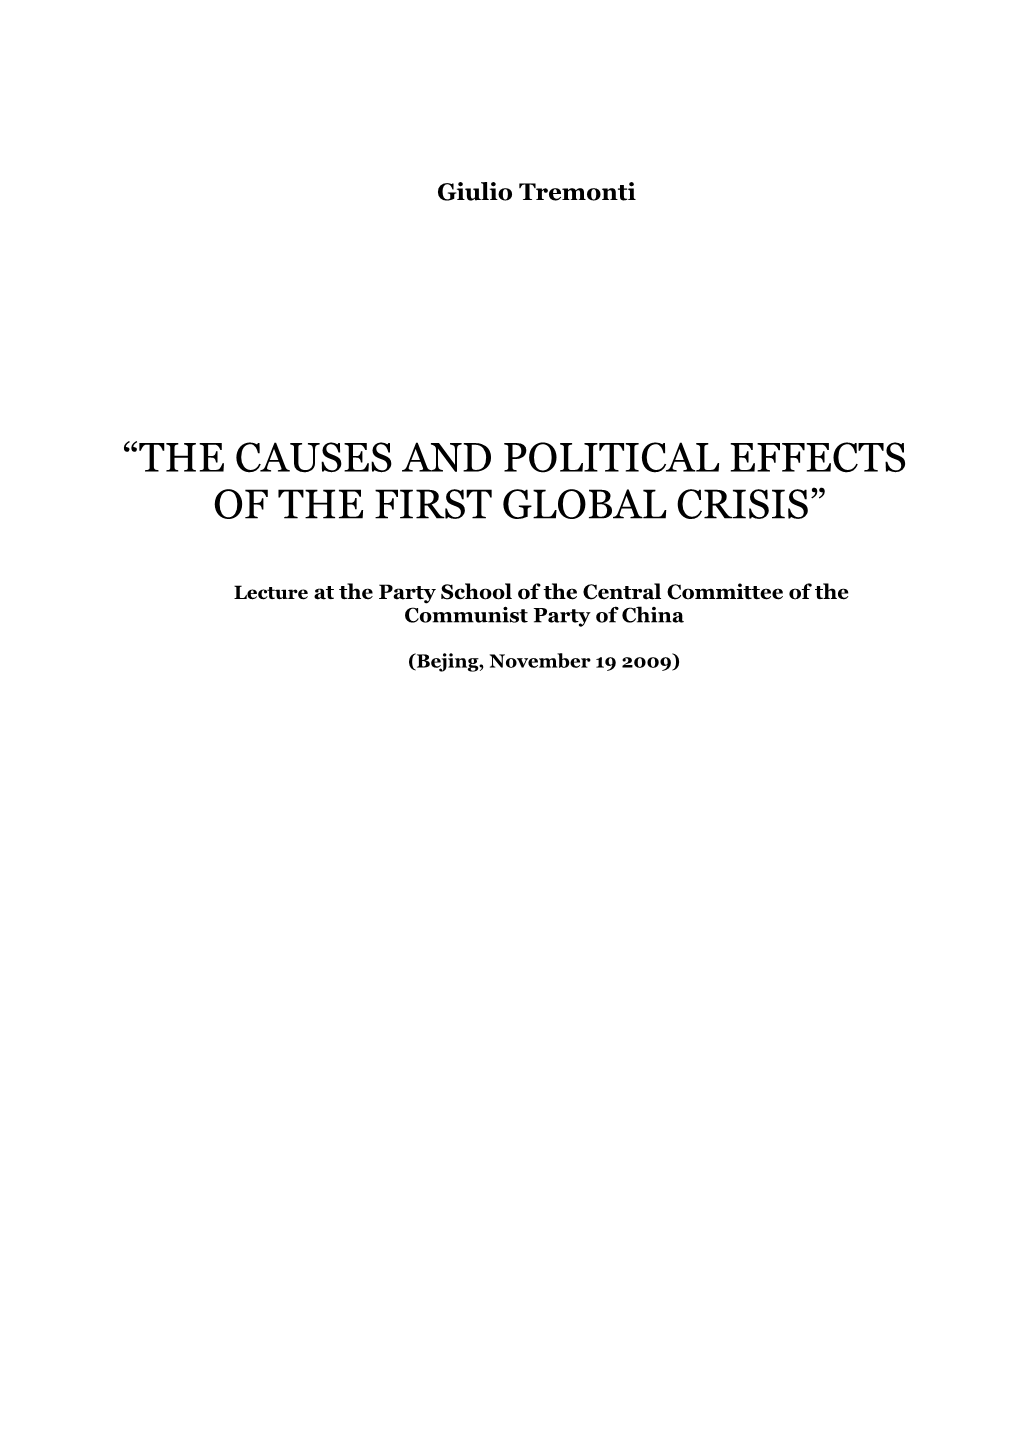 Le Cause E Gli Effetti Politici Della Prima Crisi Globale